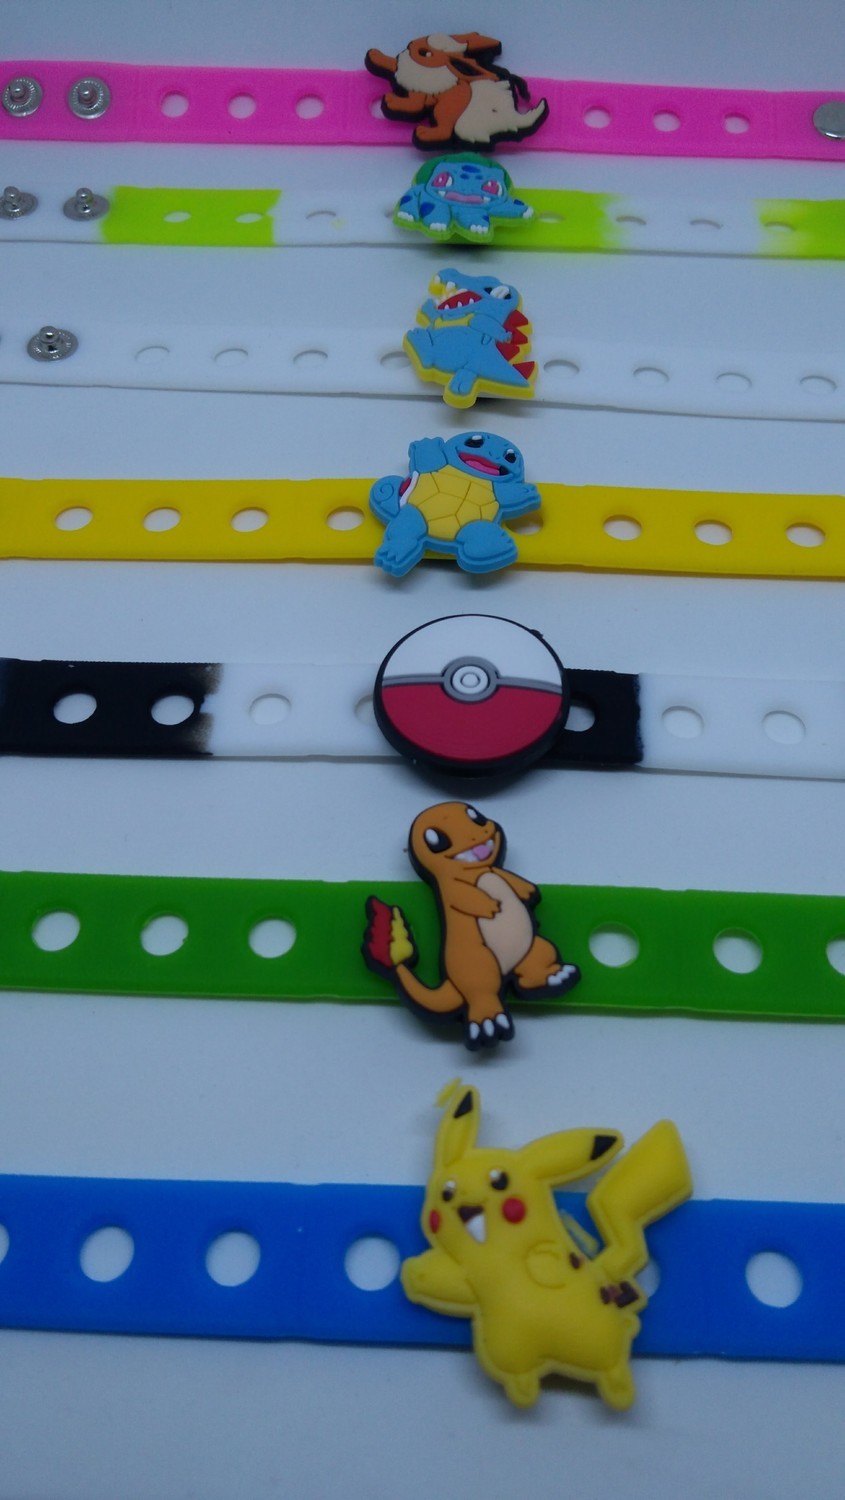 €0,79 – 10 collane a tema Pokemon Go Pikachu gadget regalini per fine festa  di compleanno bambini – ti spacco la festa – Gadget regali ricordini fine  festa di compleanno bambini